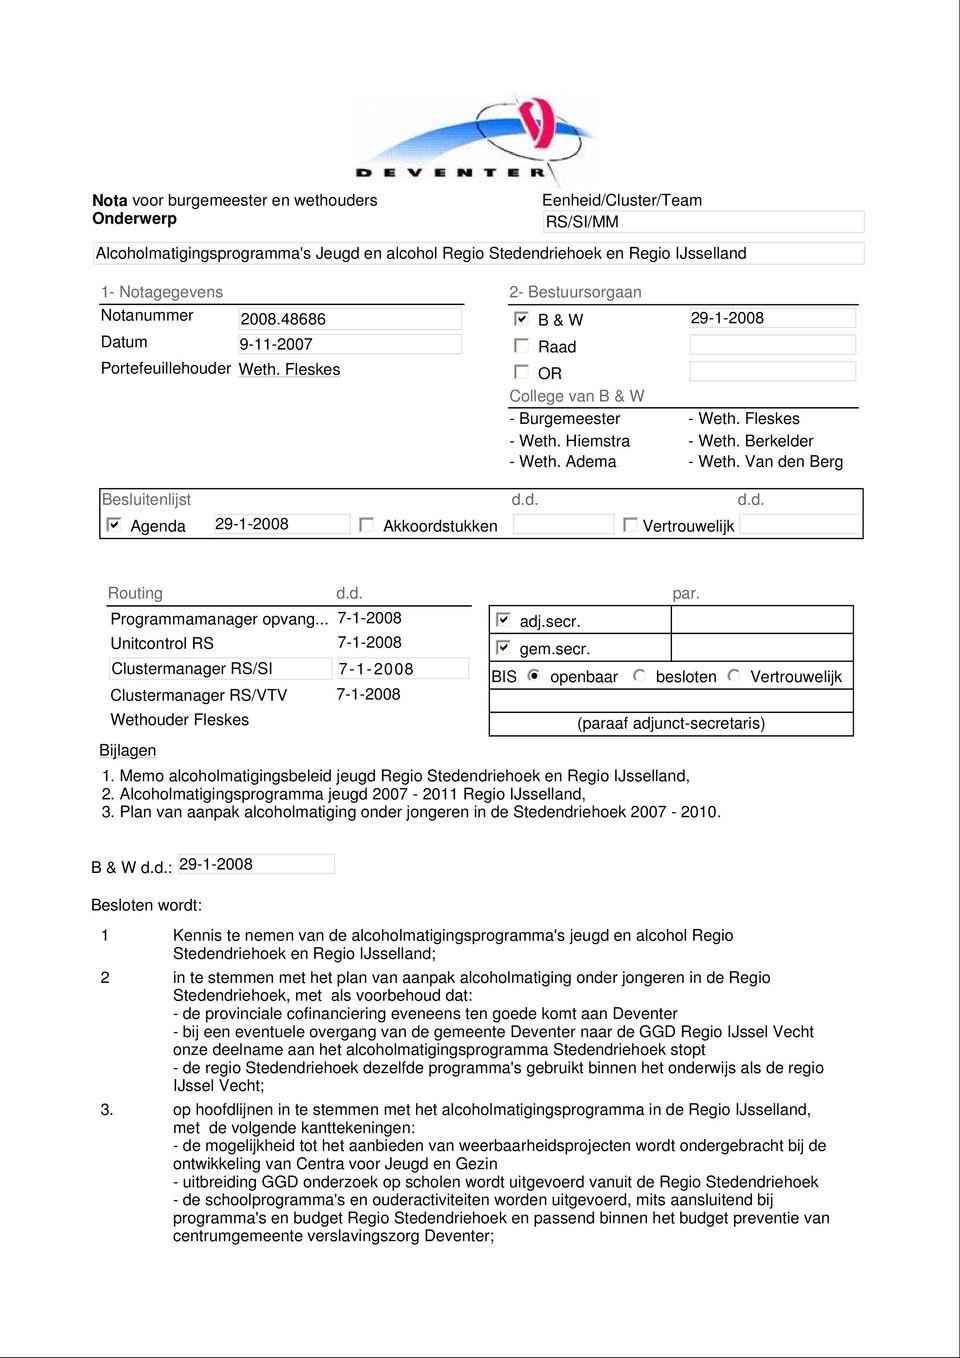 Adema - Weth. Van den Berg Besluitenlijst d.d. d.d. b Agenda 29-1-2008 Akkoordstukken Vertrouwelijk Routing d.d. Programmamanager opvang.